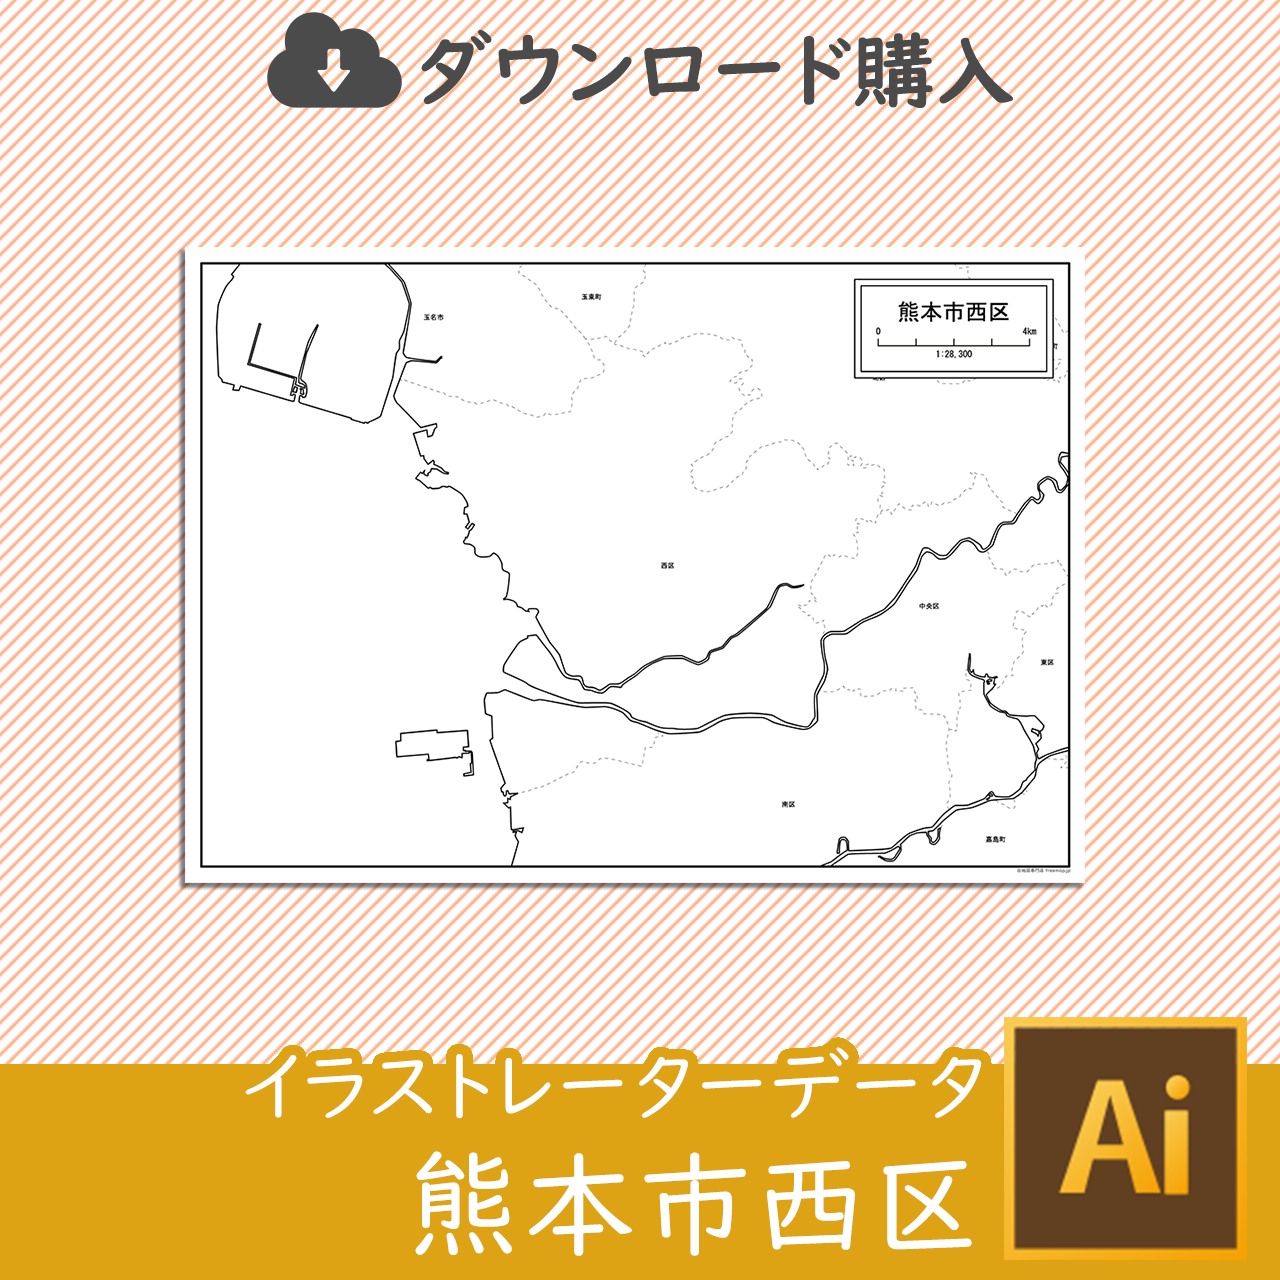 熊本市西区のaiデータのサムネイル画像